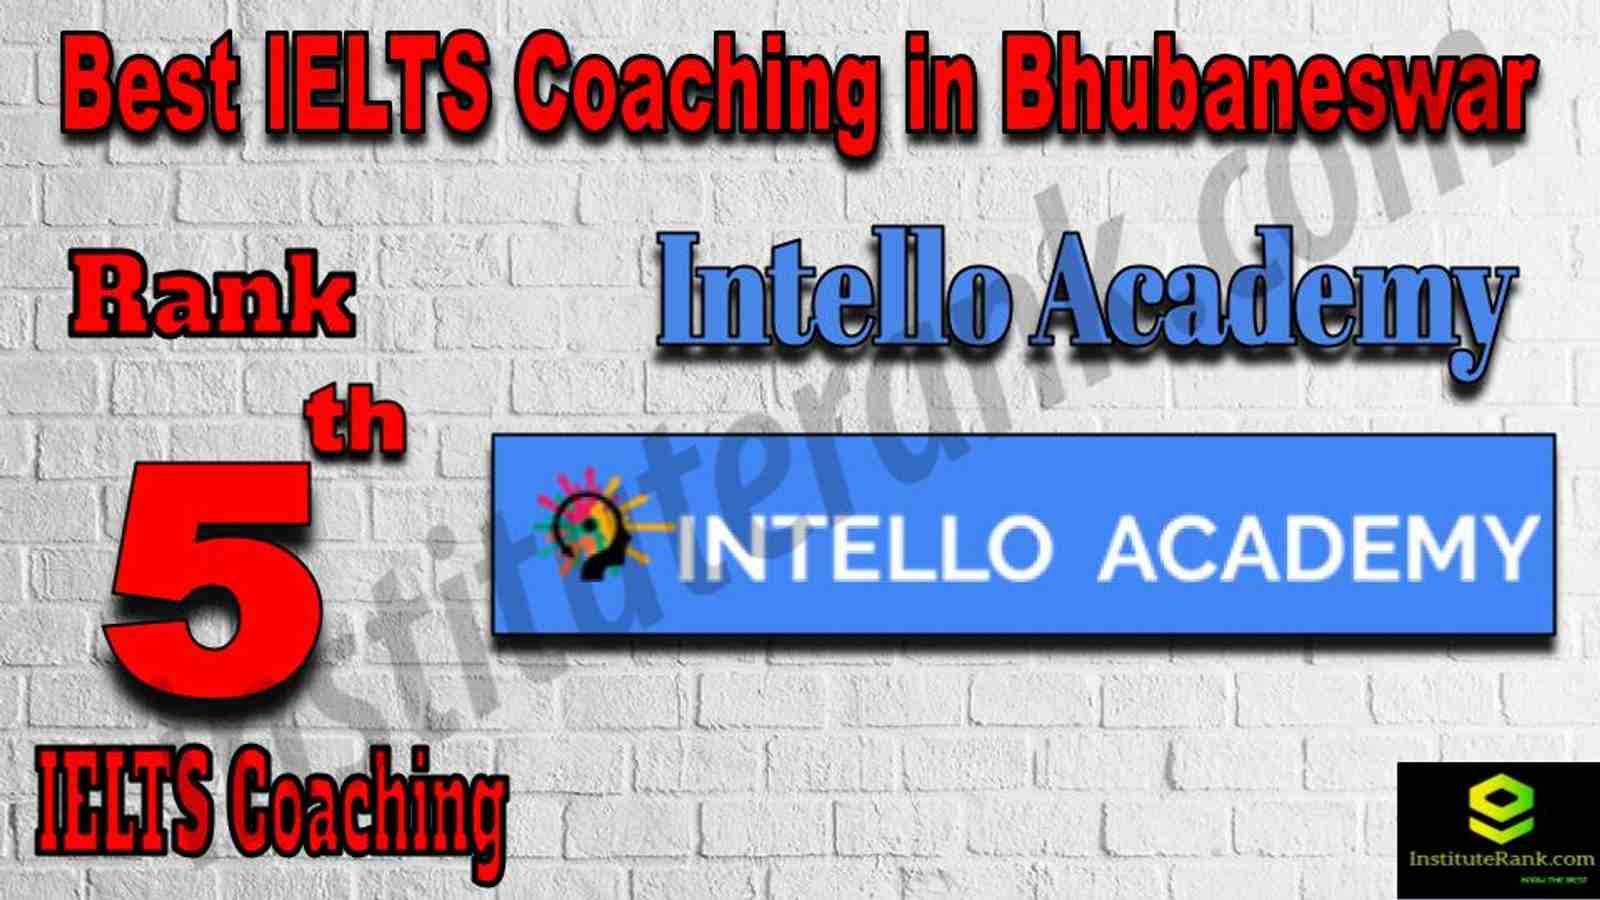 5th Best IELTS Coaching in Bhubaneswar